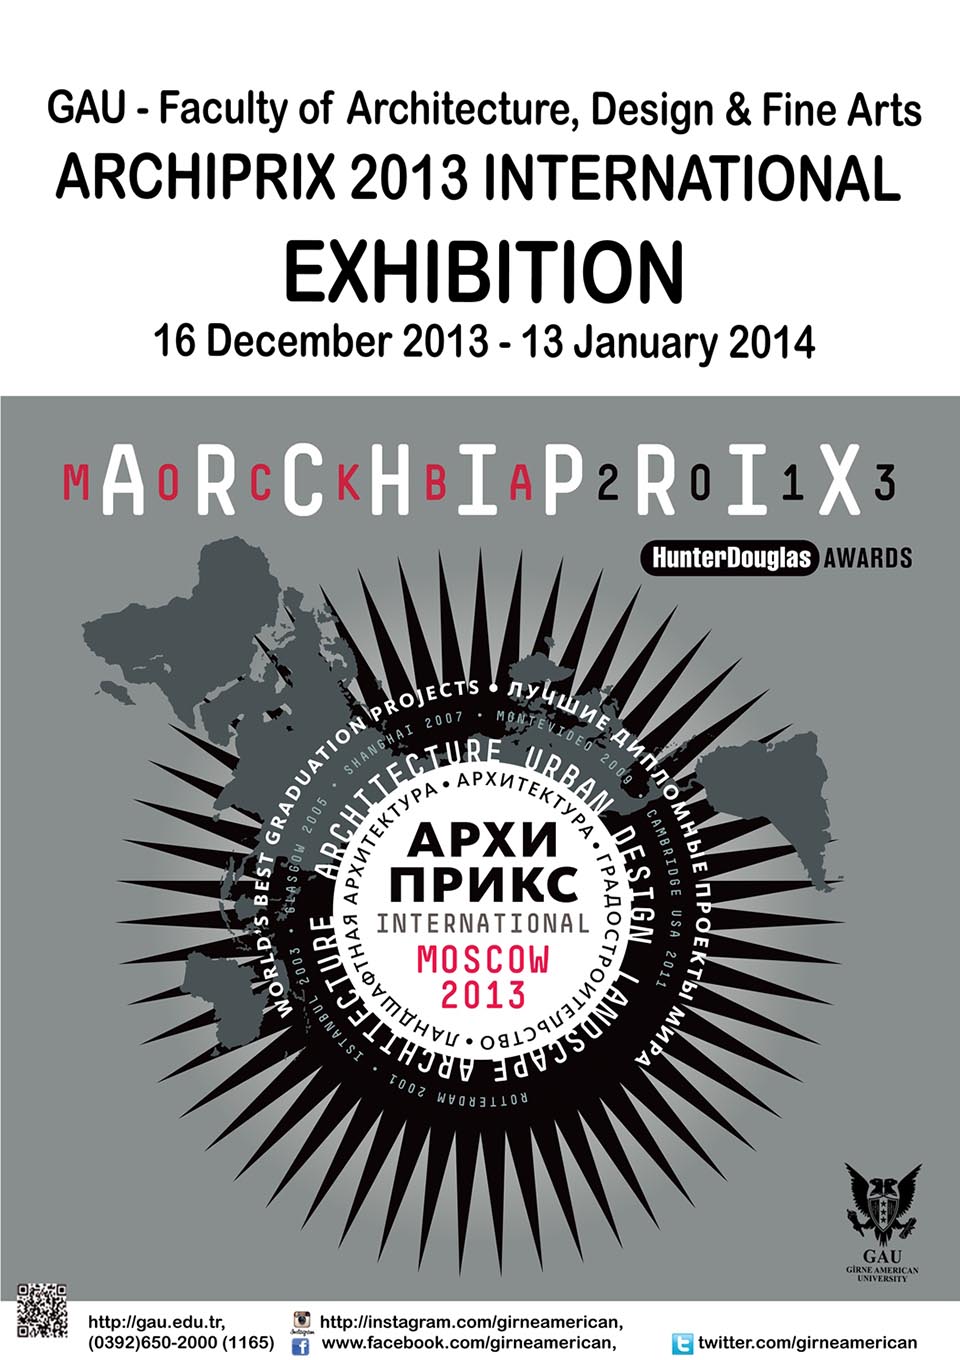 ARCHIPRIX INTERNATIONAL 2013 EXHIBITION